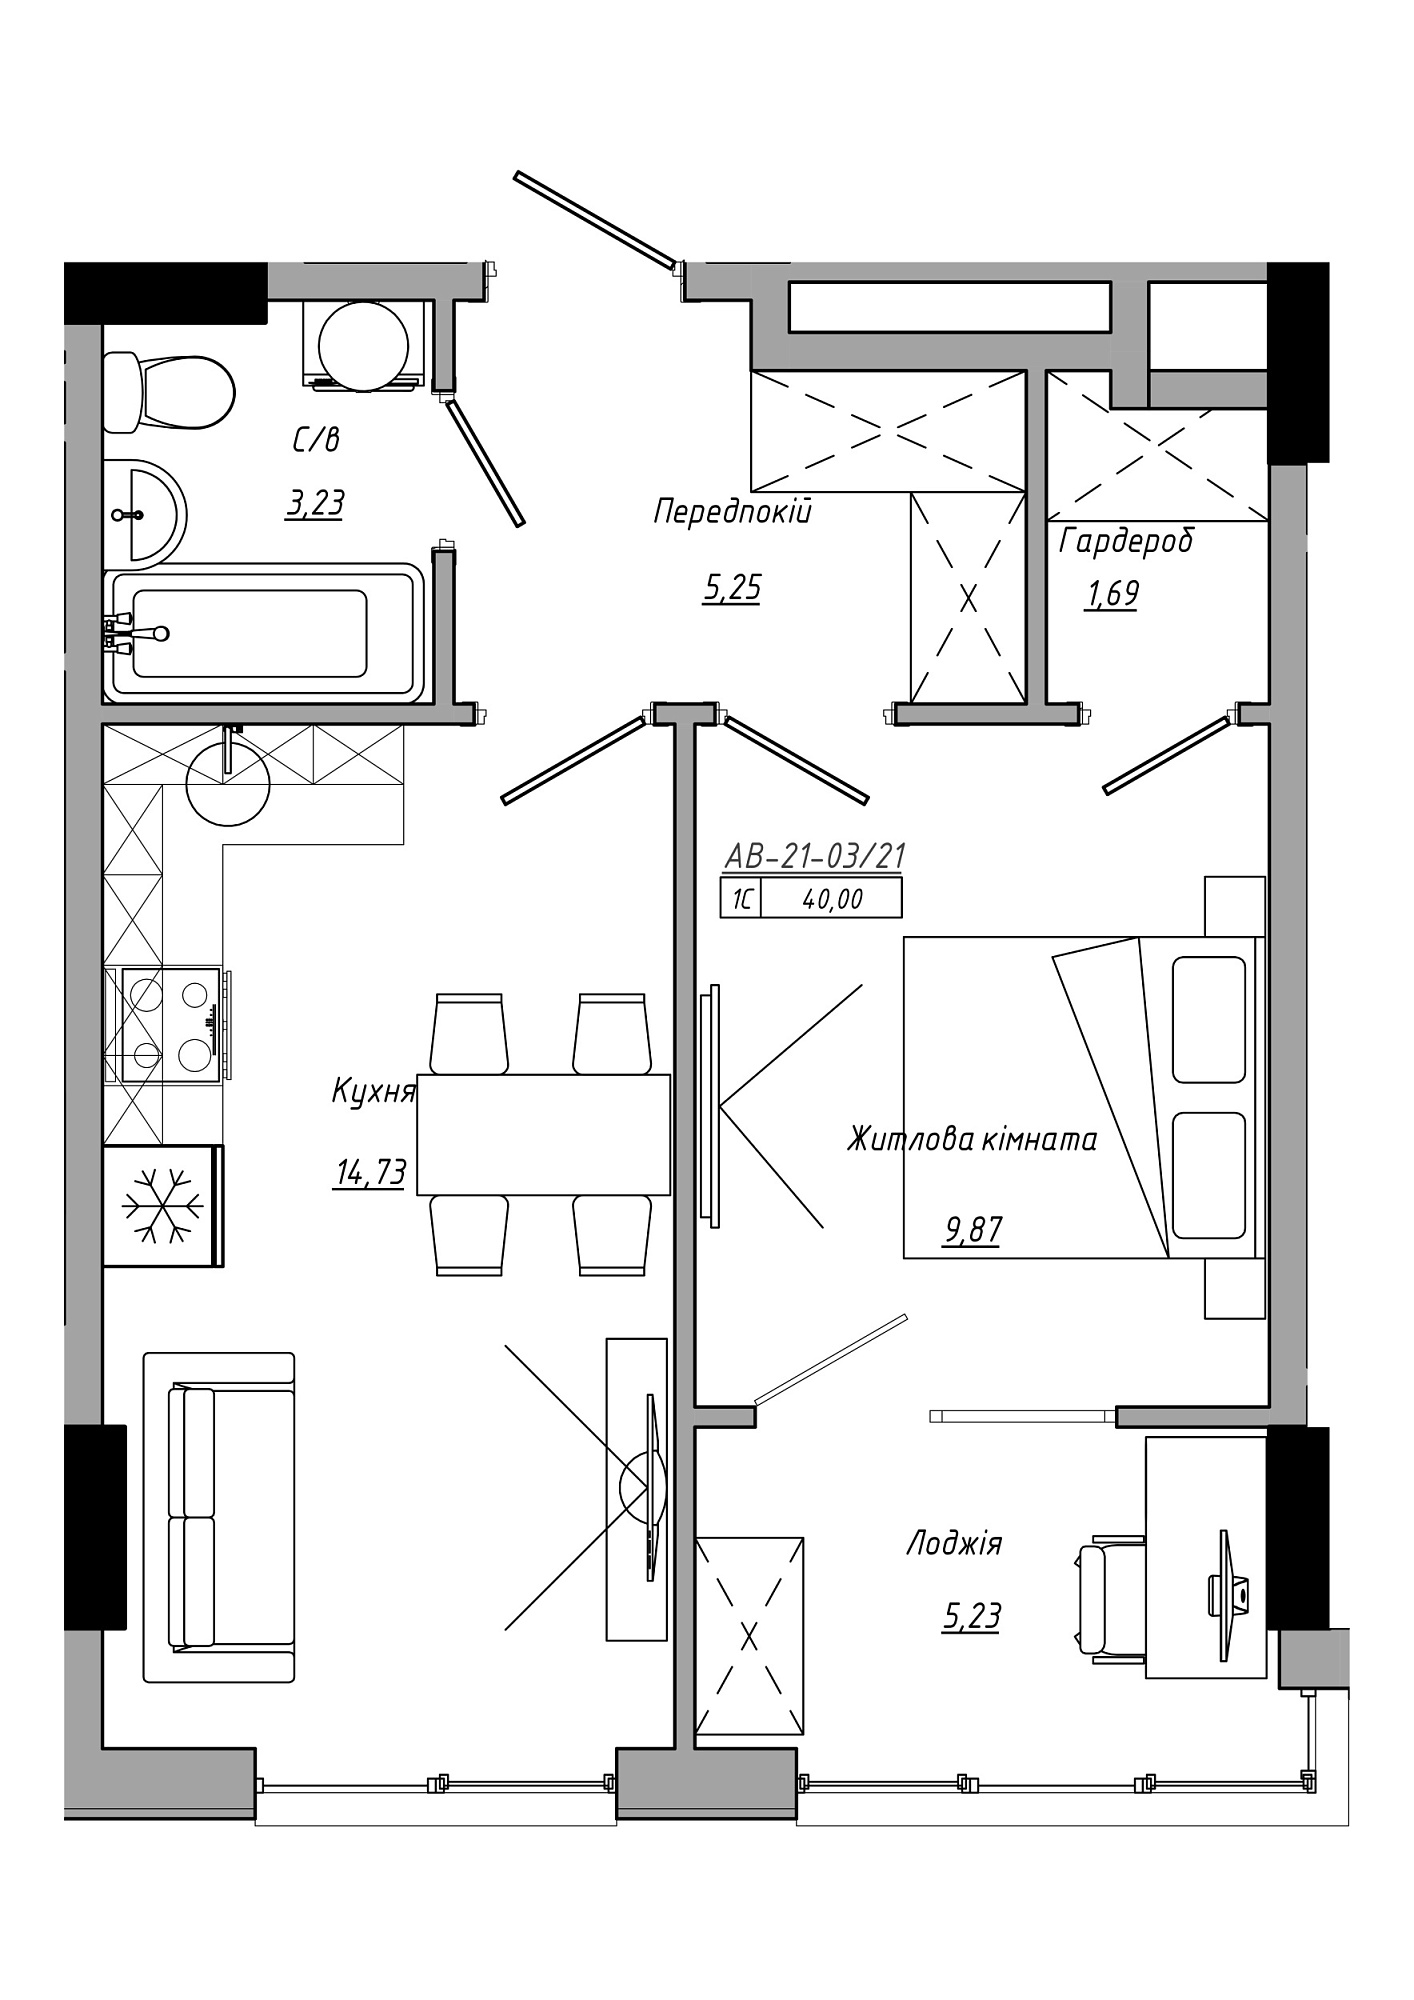 Планування 1-к квартира площею 40м2, AB-21-03/00021.